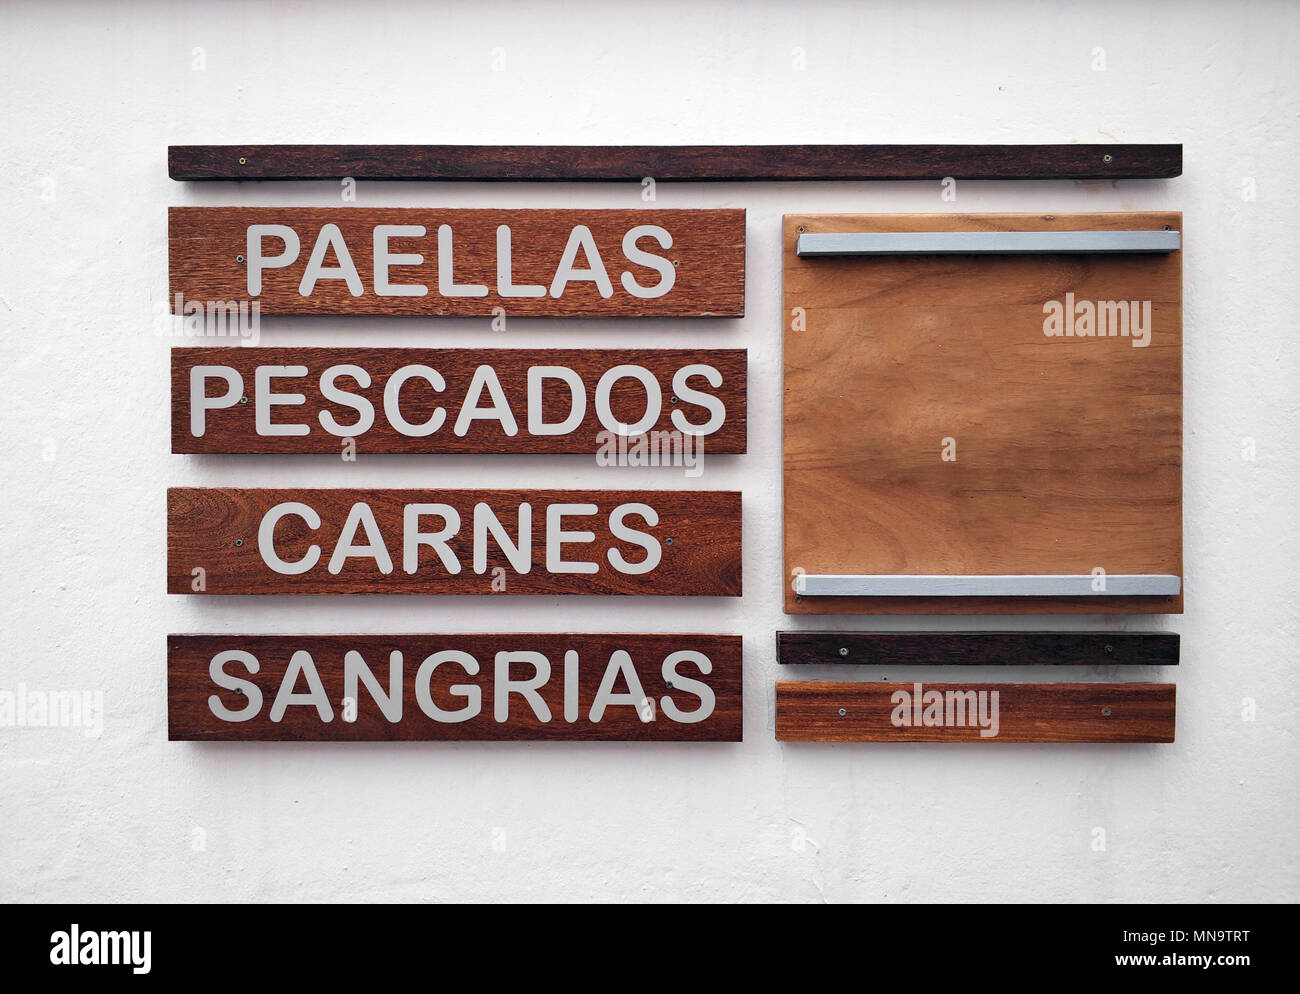 Restaurant Menü in spanischer Sprache auf eine weiße Wand. Inschriften der Lebensmittel- und Getränkeindustrie. Paella, Fisch, Fleisch und Sangria. Stockfoto